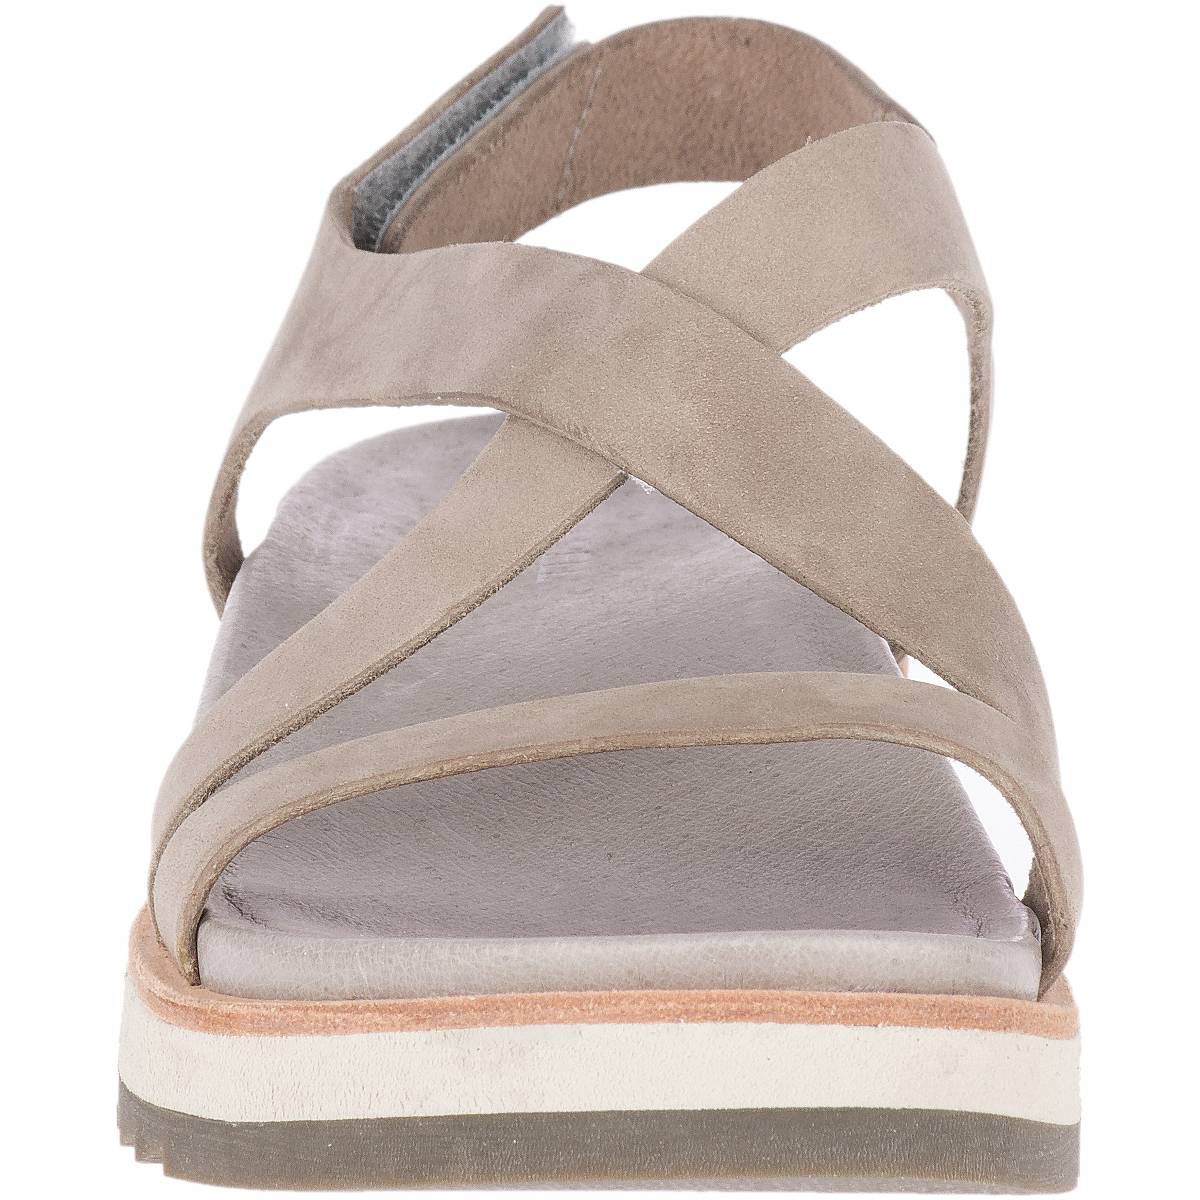 Merrell Juno Backstrap Sandal - Women's - Footwear